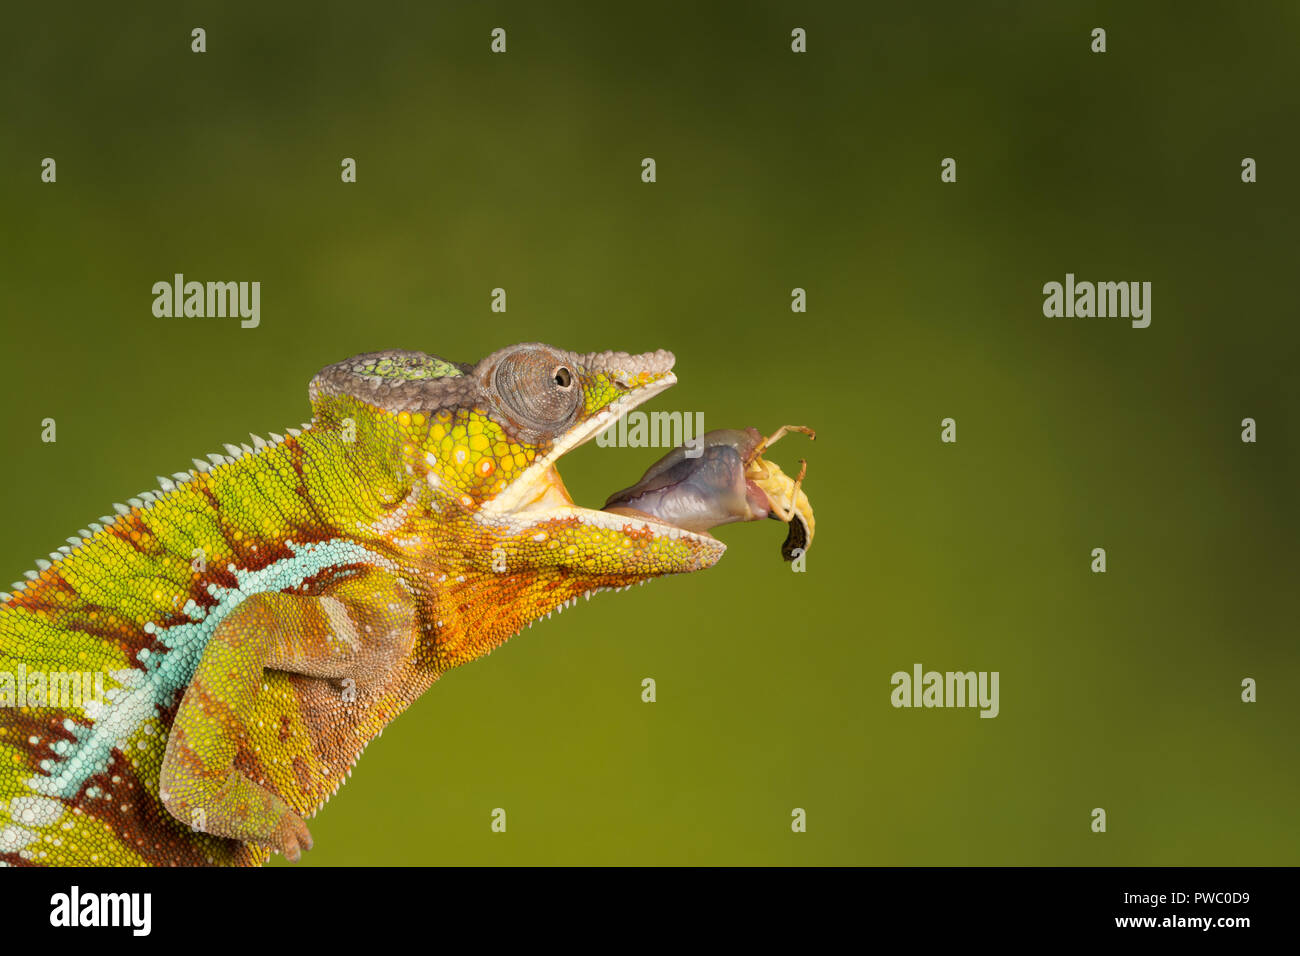 Panther chameleon (Furcifer pardalis), einem bunten Reptilien aus Madagaskar, gerade nach dem Beutefang (Heuschrecke) mit seiner langen Zunge Stockfoto